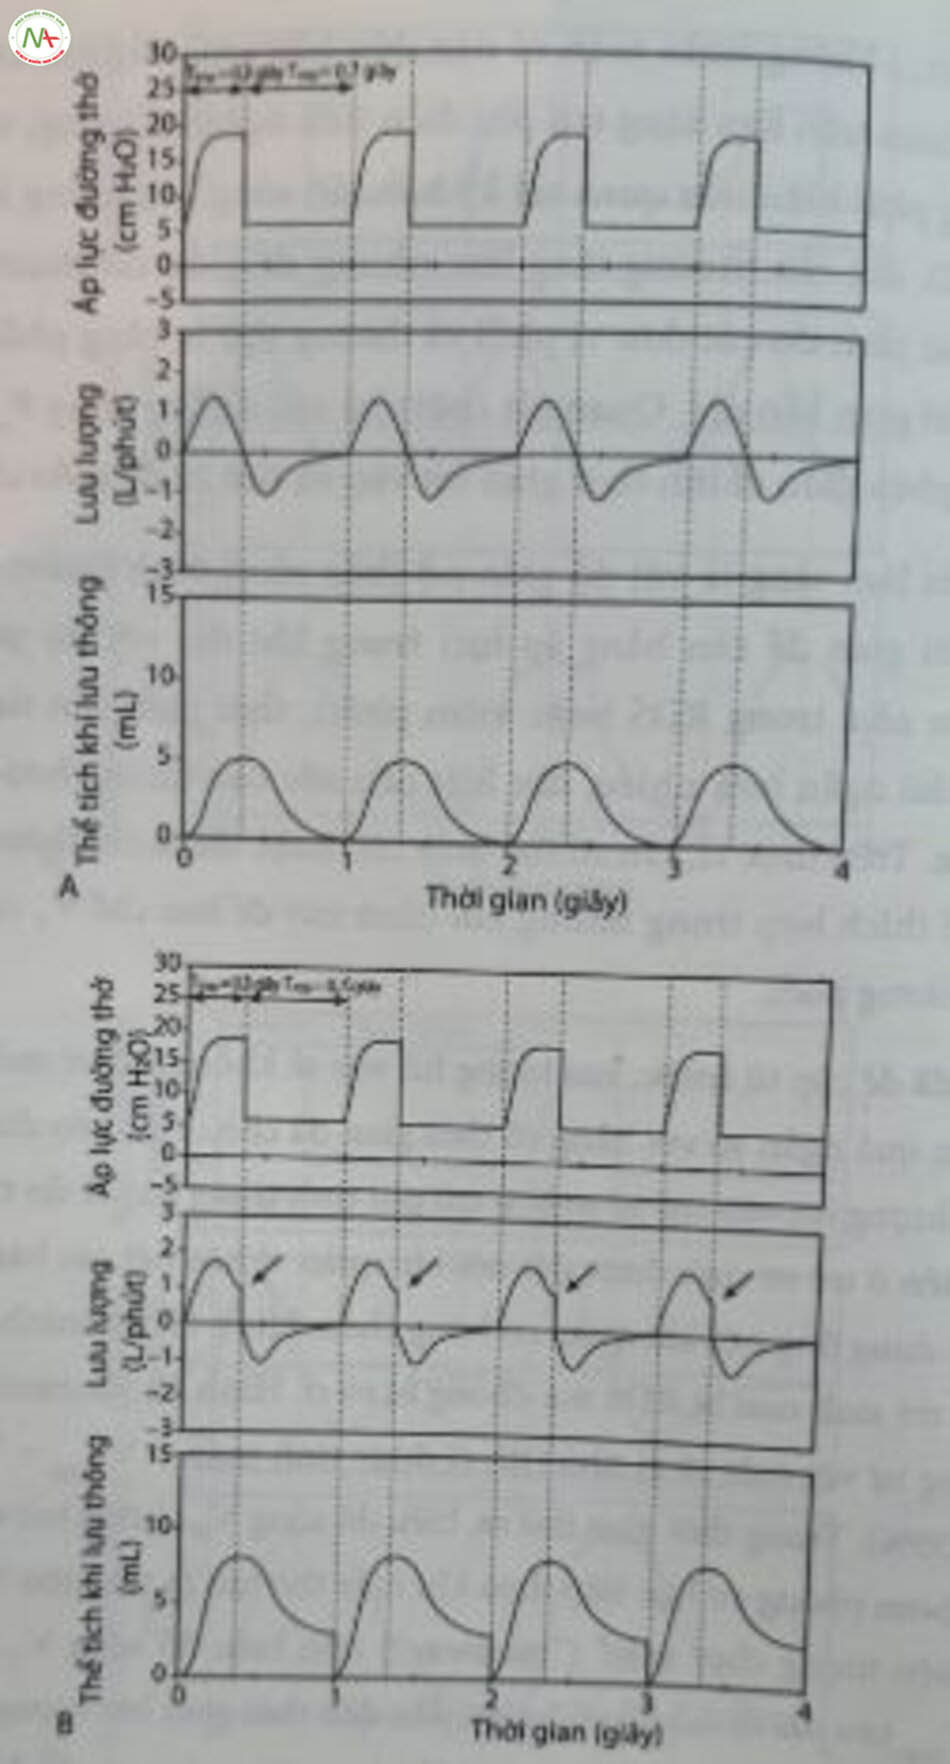 Hình 12.9 . Ảnh hưởng của rò rỉ ống nội khí quản lên biểu đồ sóng lưu lượng và thể tích khí lưu thông (V,) trong bơm phòng cơ học giới hạn áp lực. Trẻ sinh non với hội chứng suy hô hấp (RDS). (A) Thời gian hít vào (Tmp) là 0,3 giây; thời gian thở ra (7) là 0,7 giây, không rò rỉ. Lưu lượng hít vào trở về mức 0 trước khi kết thúc bơm phòng cơ học. Lưu ý. : 0,3 giây; T. = insp Biểu đồ sóng V, trở về mức 0 mL trước lần bơm phồng tiếp theo. (B) T insp = 0,7 giây; có rò rỉ (35%). Lưu lượng hít vào không đạt đến 0 trước bơm phòng cơ học tiếp theo (mũi tên). Lưu ý: Biểu đồ sóng V, không trở lại mức 0 mL trong thì thở ra. Nó được làm zero điện tử trước điểm bơm phòng tiếp theo.